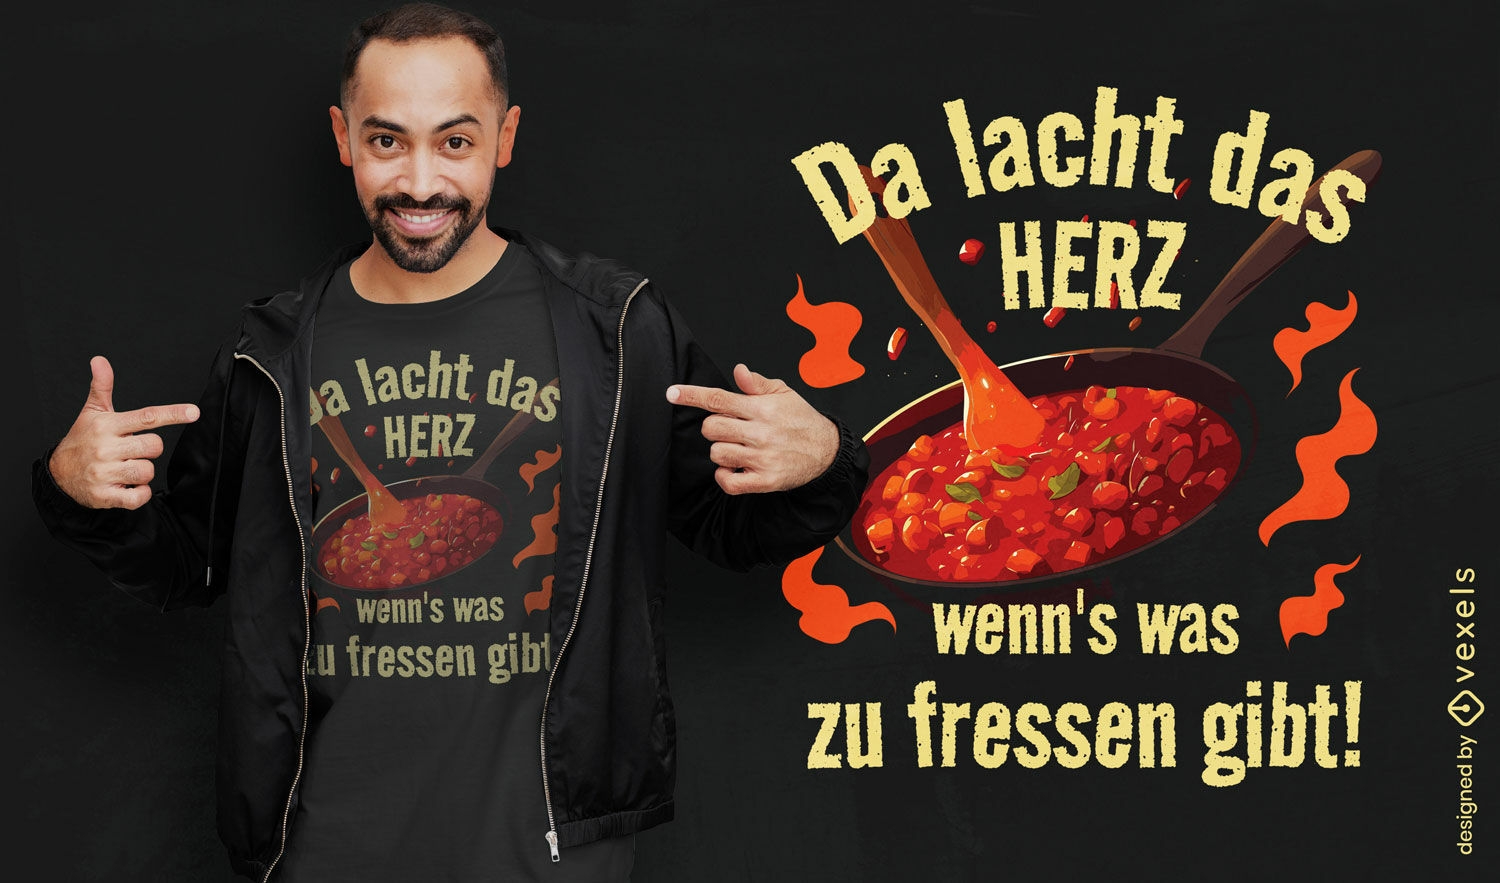 Dise?o de camiseta con cita culinaria alemana.